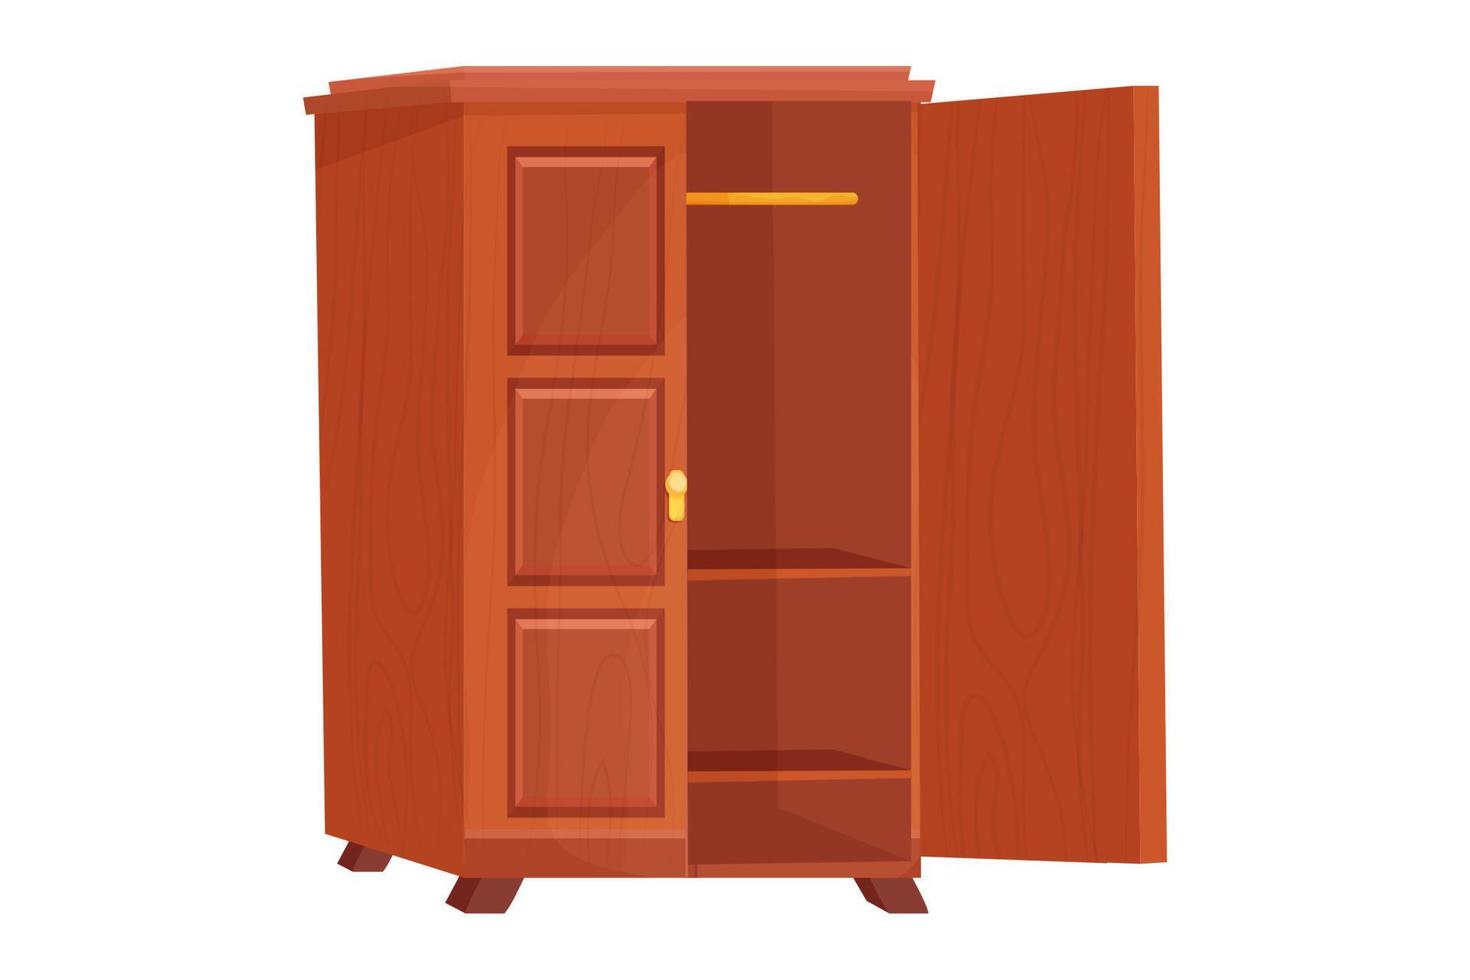 armoire en bois meubles vides avec étagère en style cartoon isolé sur fond blanc. armoire, objet d'intérieur de tiroir. illustration vectorielle vecteur